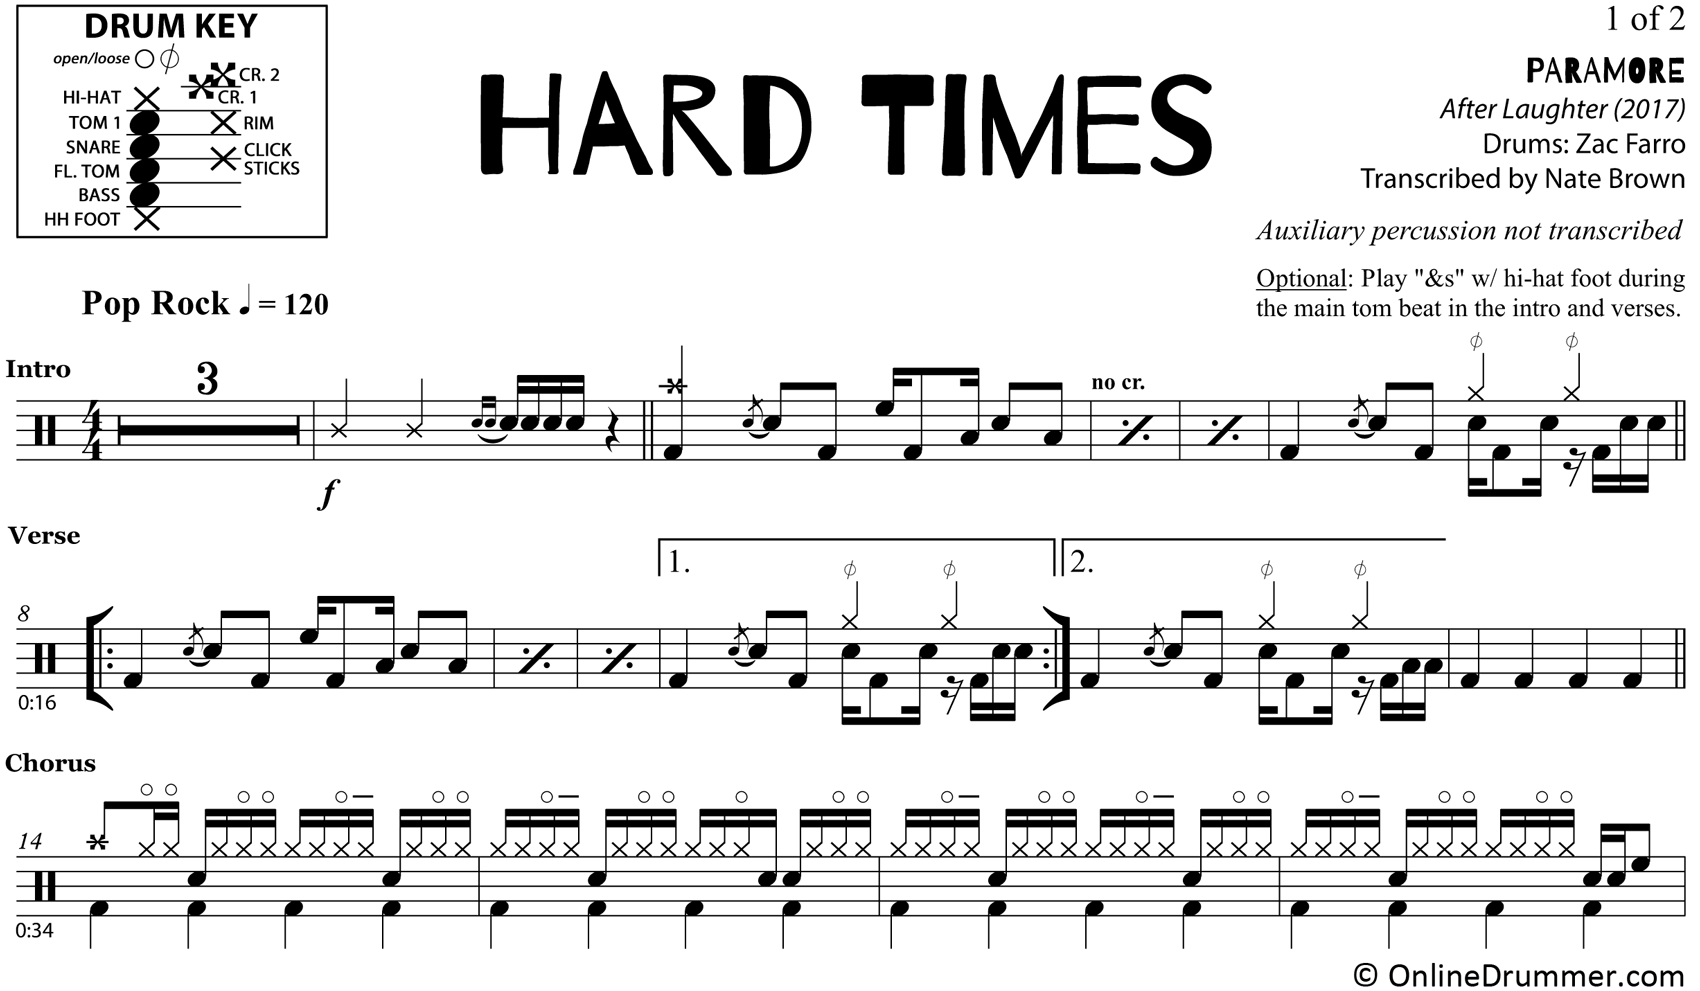 Hard Times - Paramore - Drum Sheet Music